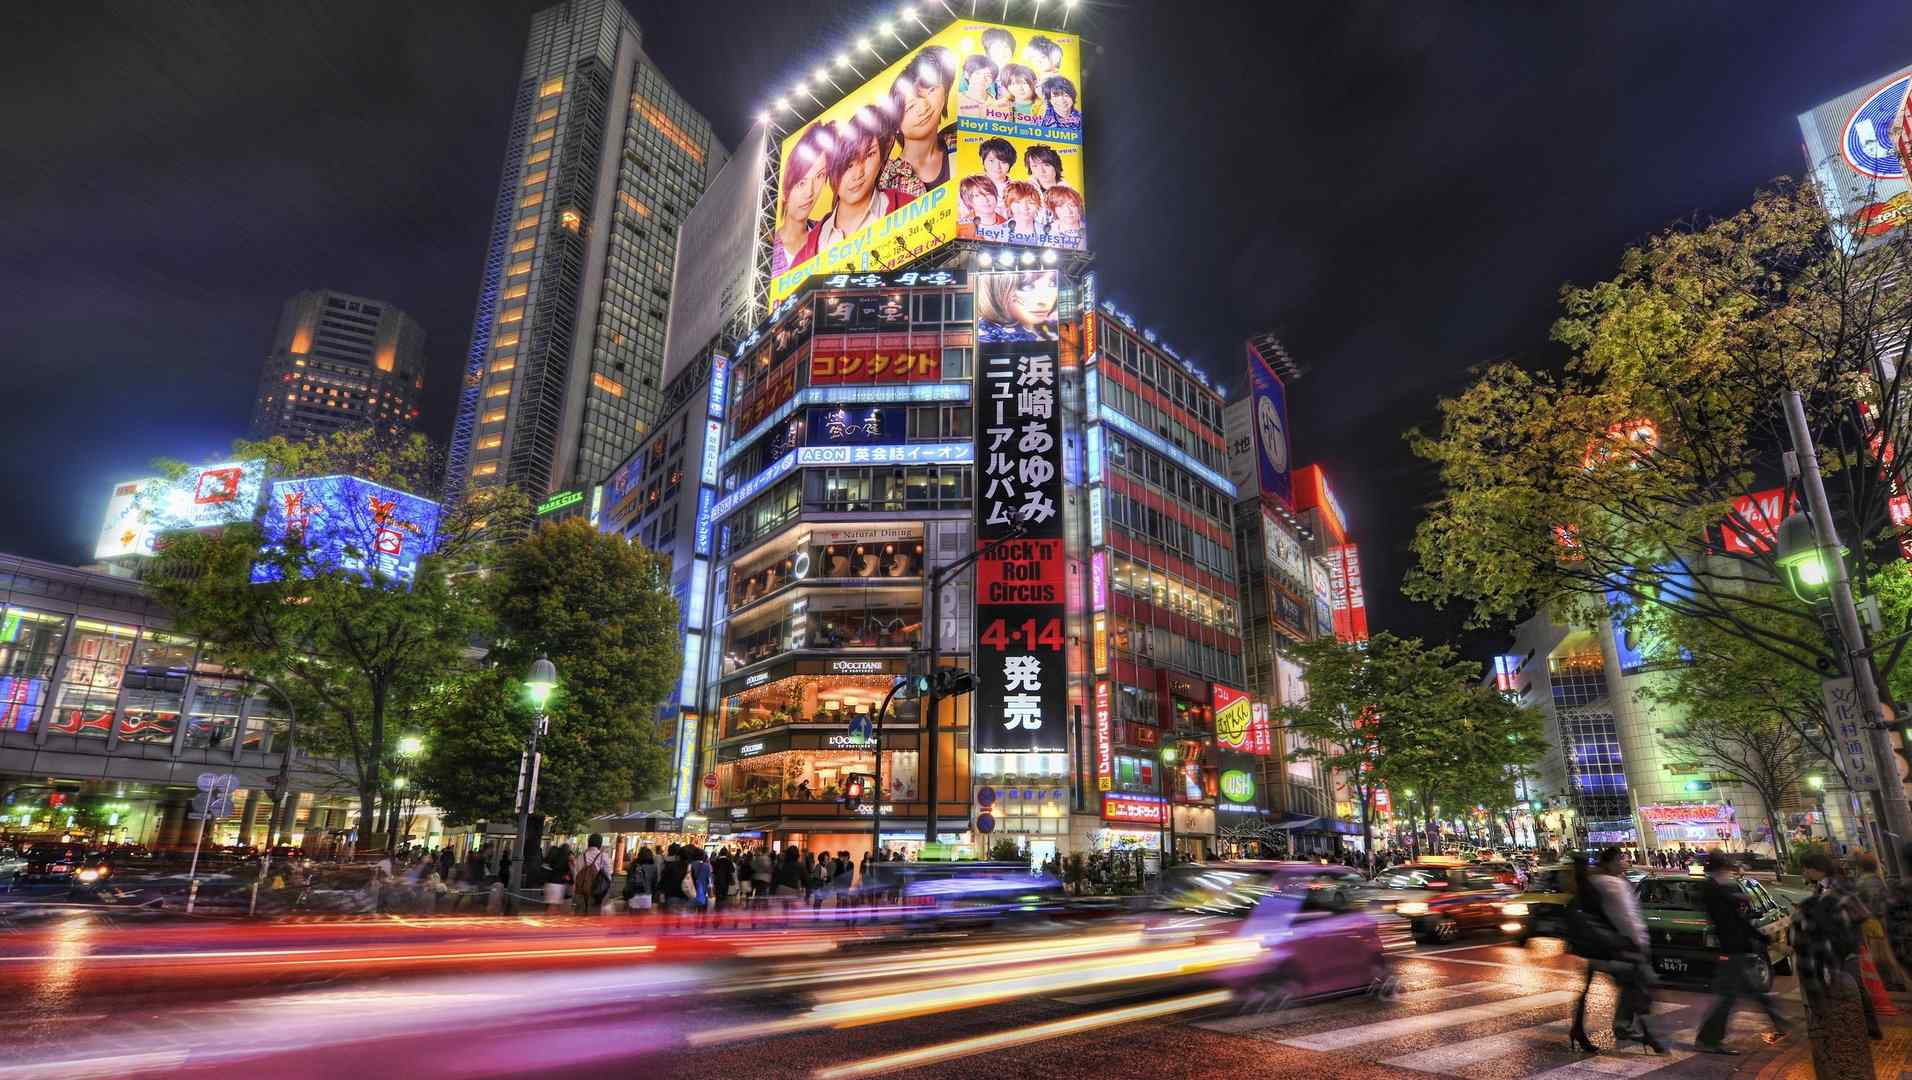 东京唯美夜景风景图片桌面壁纸下载